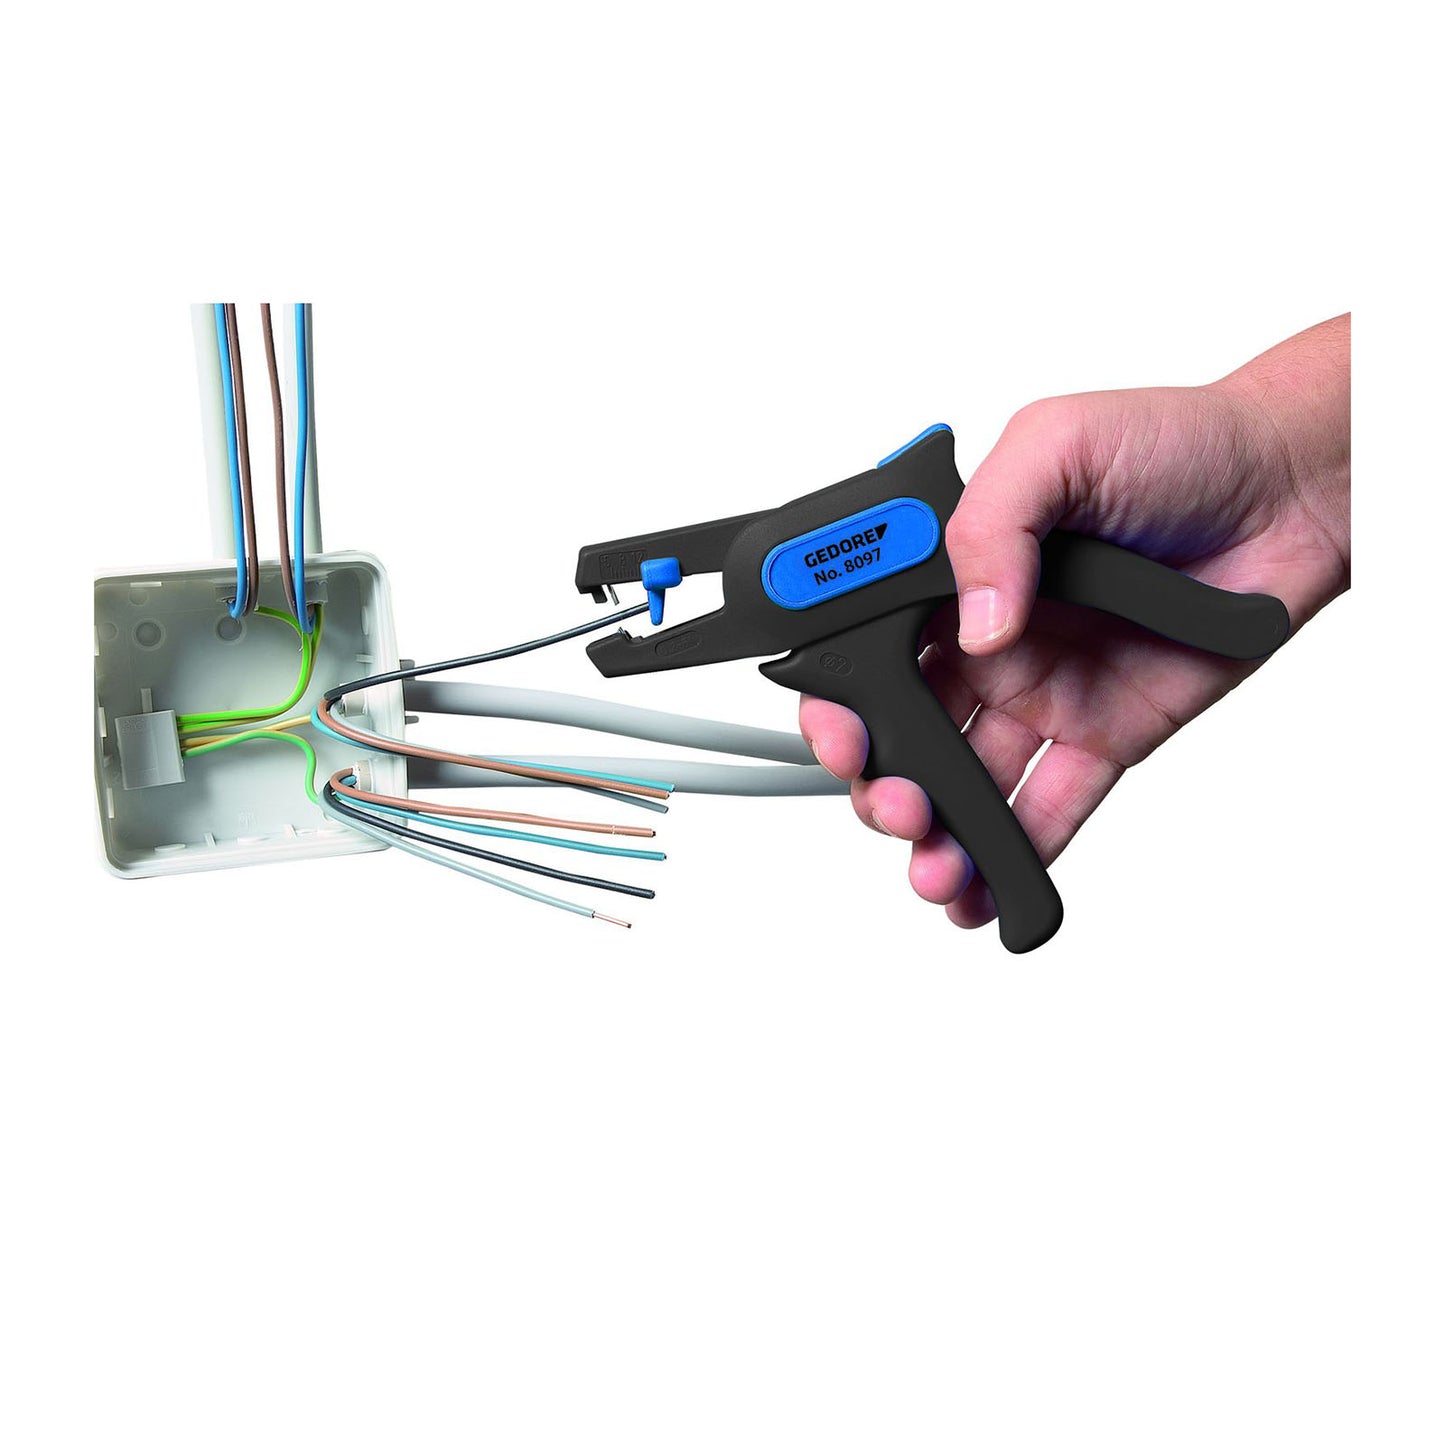 GEDORE 8097 - Self-adjusting wire stripper (6702940)